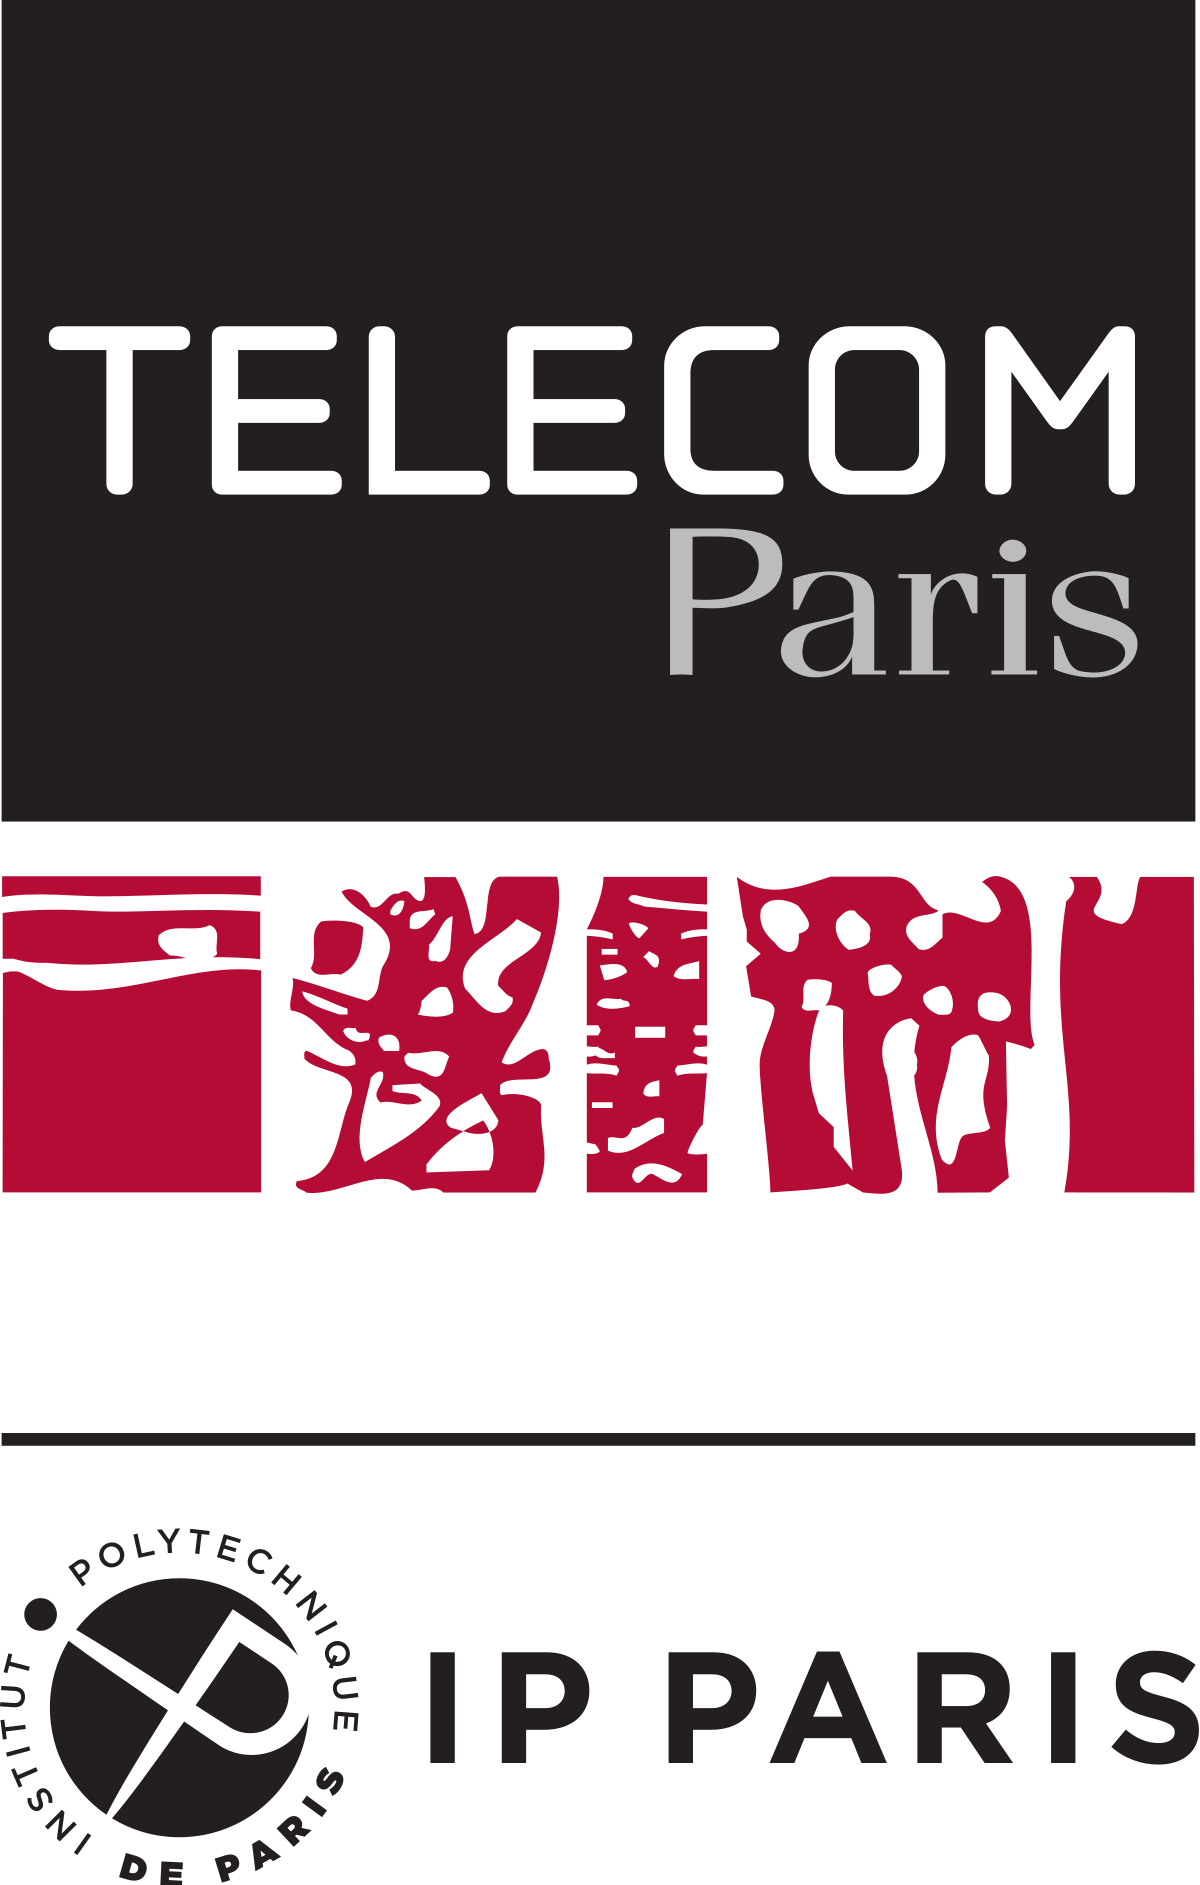 TELECOM PARIS LOGO